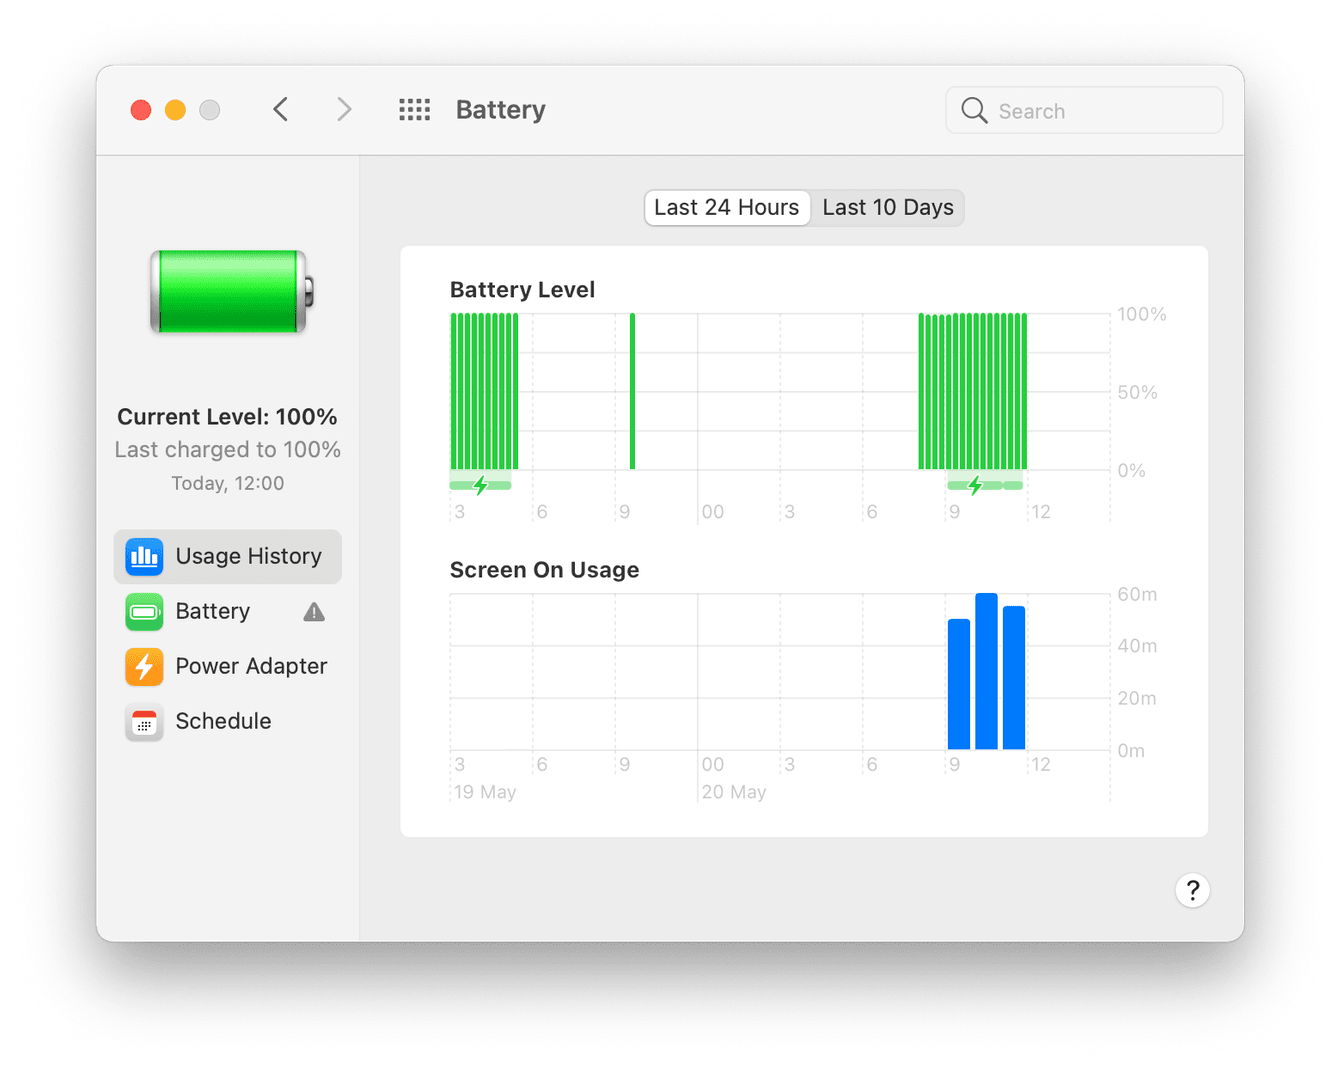 Mac battery usage history